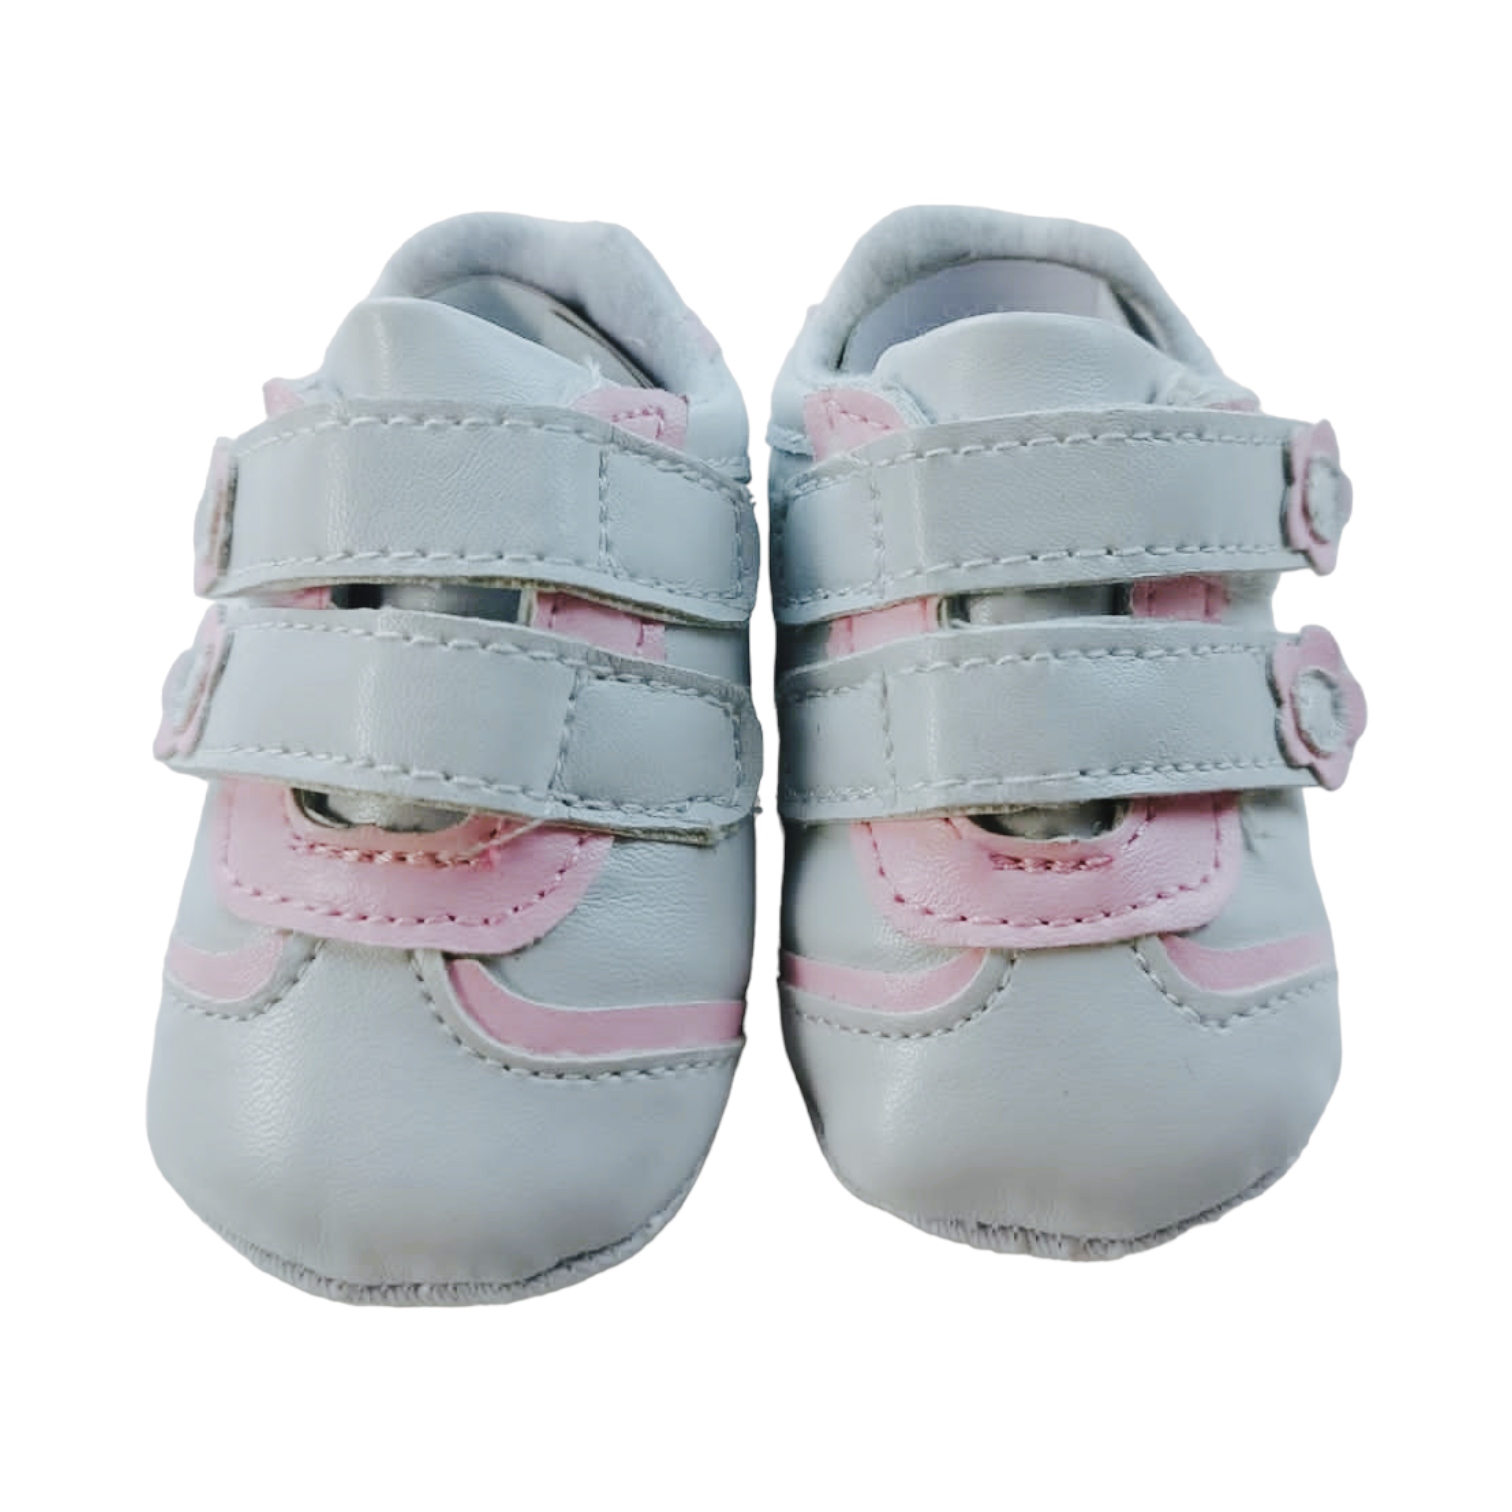 Zapatos blancos con rosado Talla 13